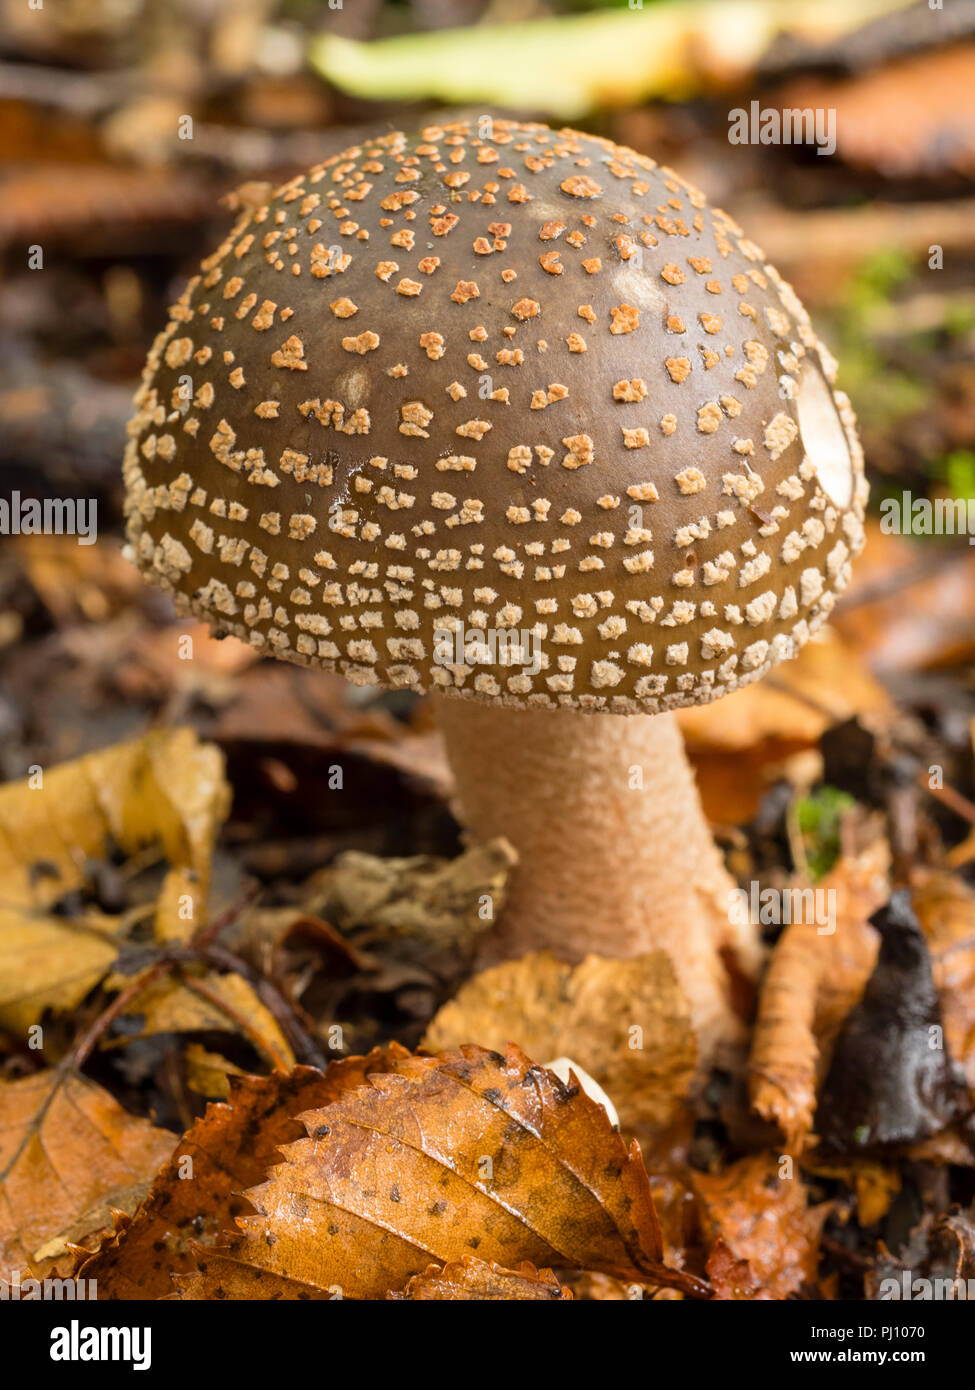 Fraîchement émergées de la fructification des champignons, Amanita rubescens Blusher, parmi la litière de bouleau Banque D'Images